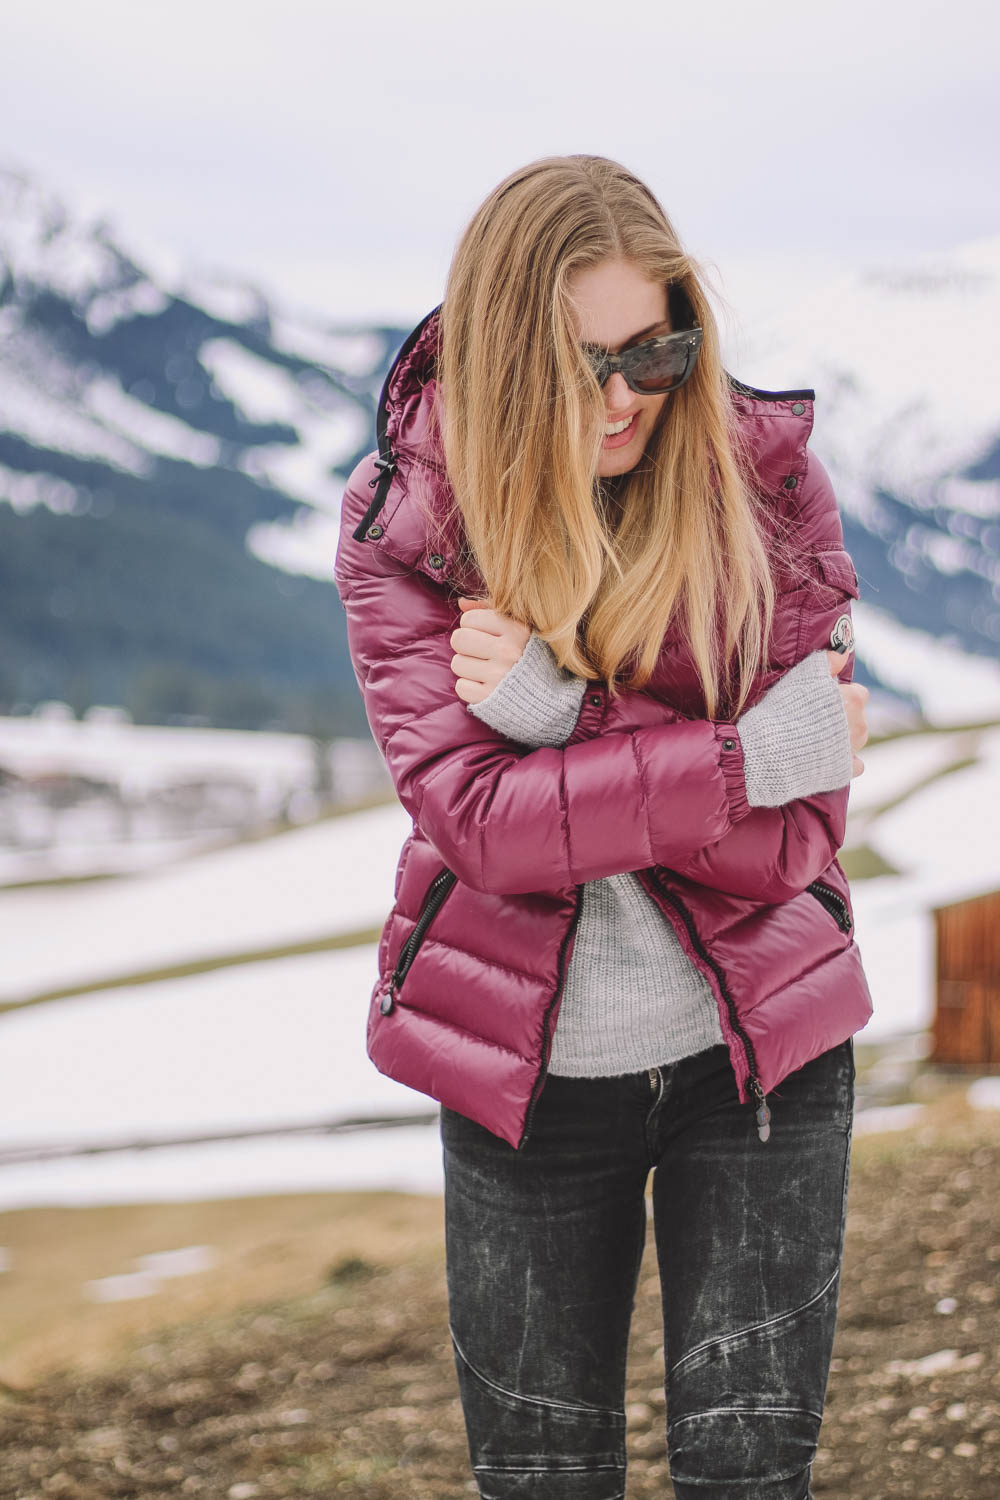 BLOG YOUR STYLE: Winter Outwear auf dem österreichischen Lifestyle Blog Bits and Bobs by Eva.